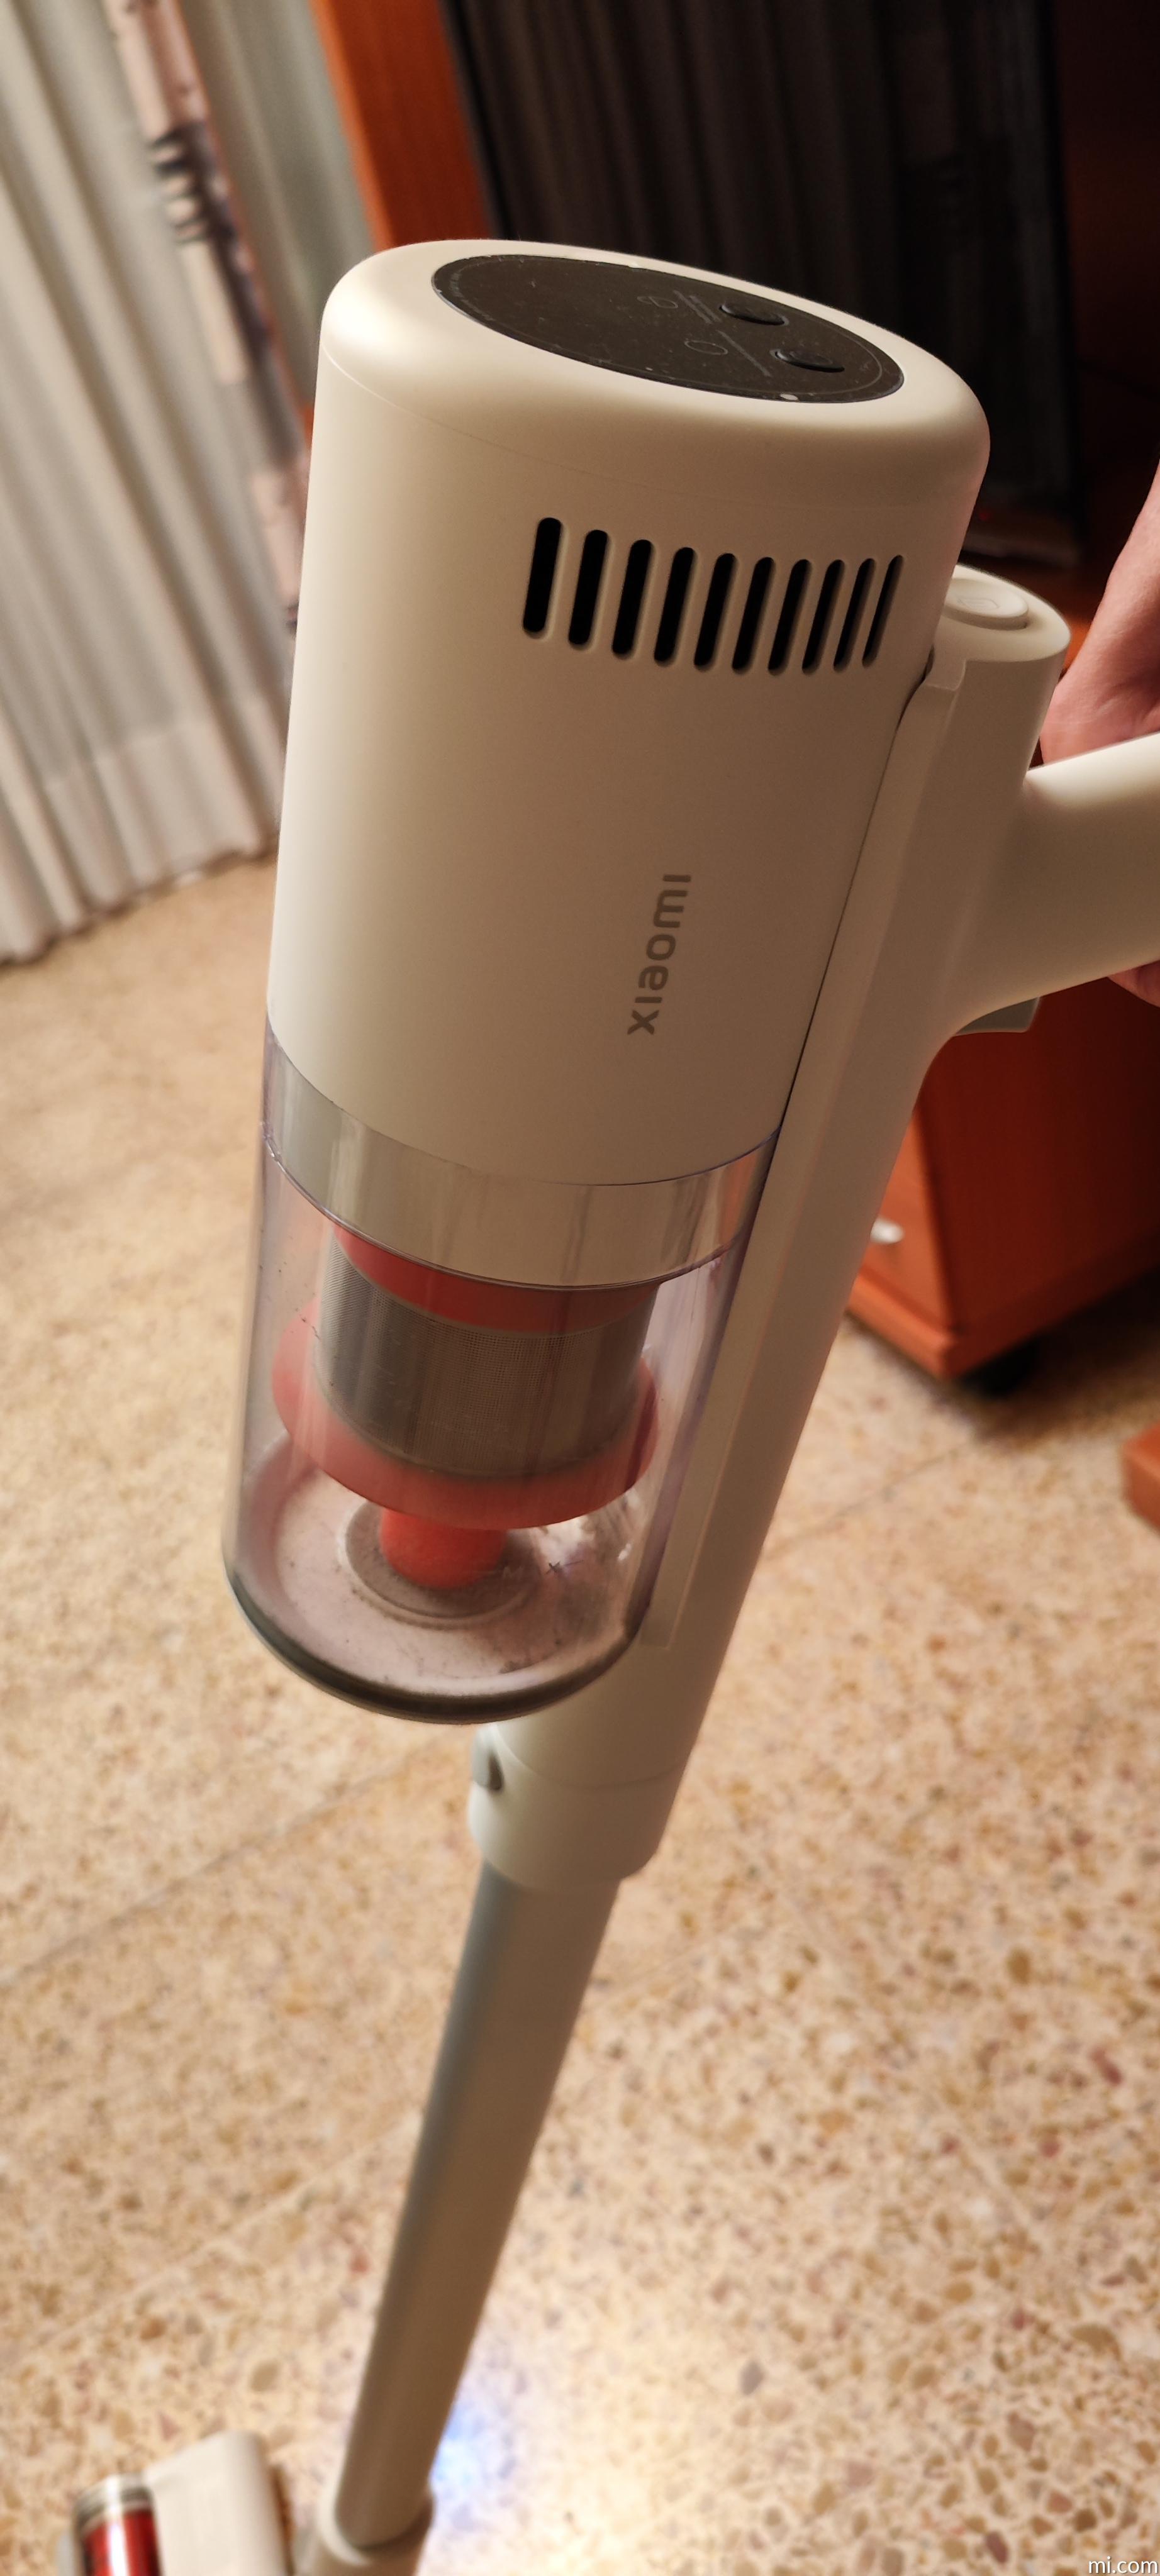 Xiaomi Vacuum Cleaner G11 - Aspiradora Escoba con hasta 180 AW de